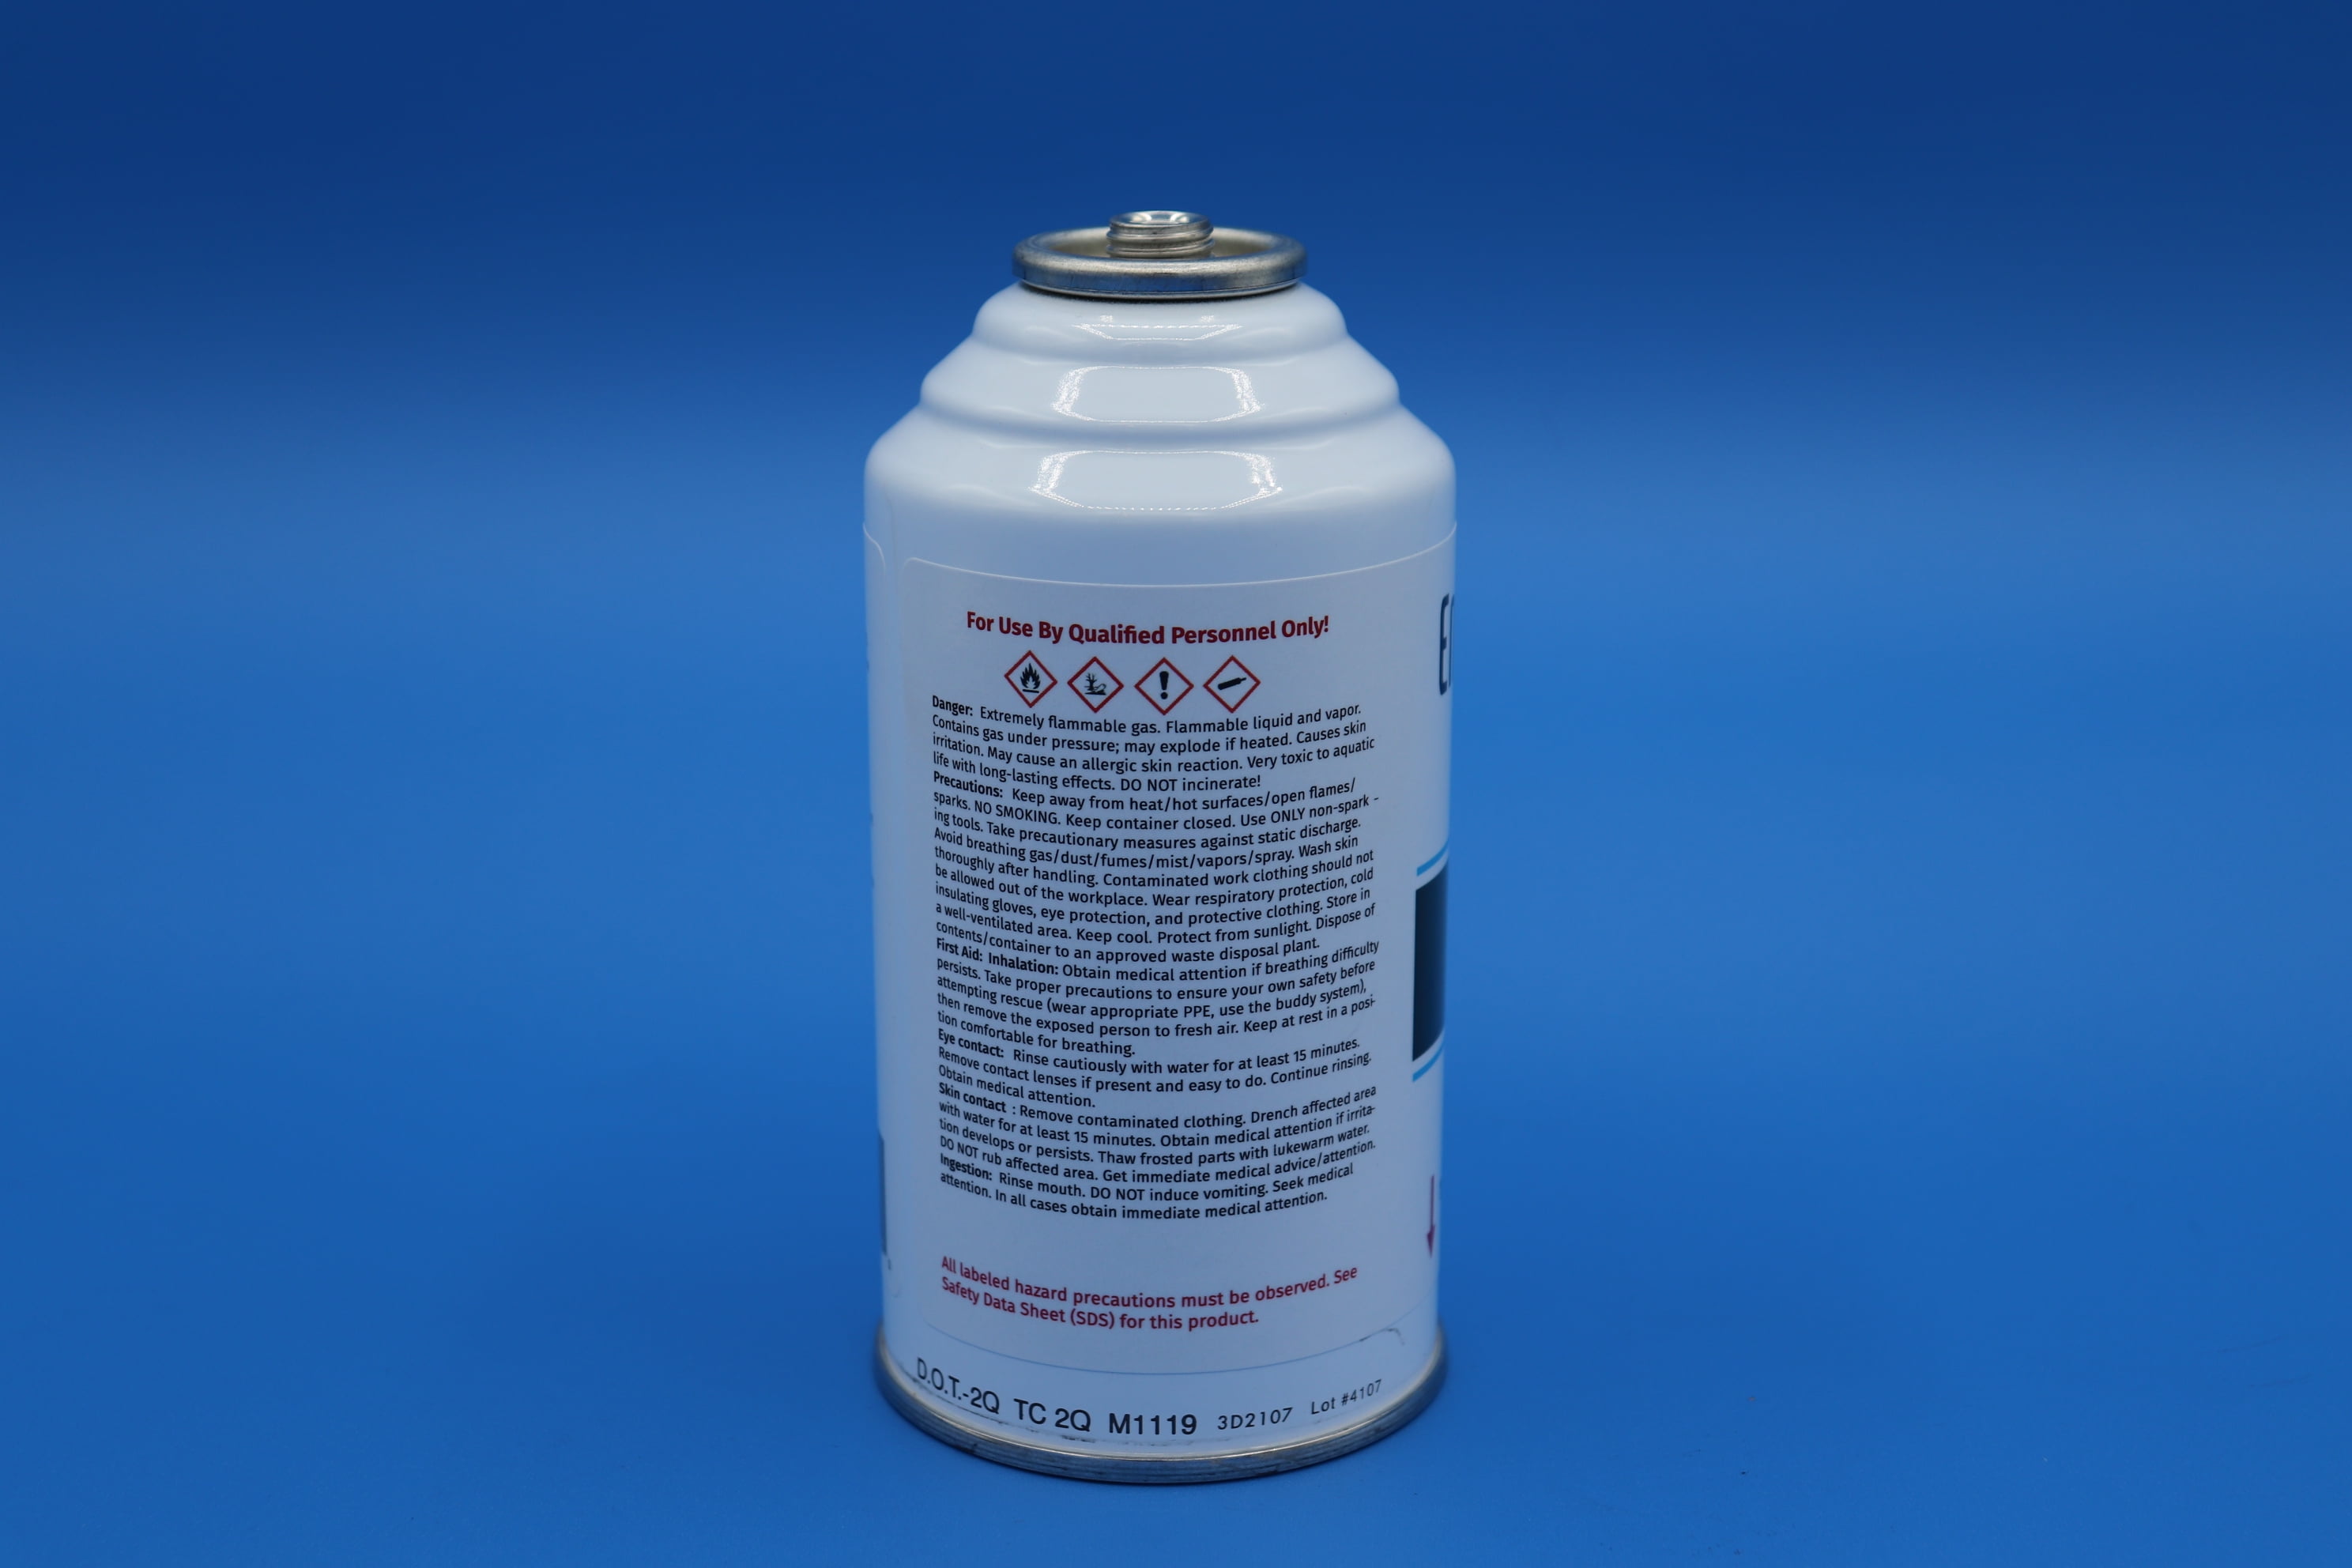 R600-based REFRIGE greenfreeze canister